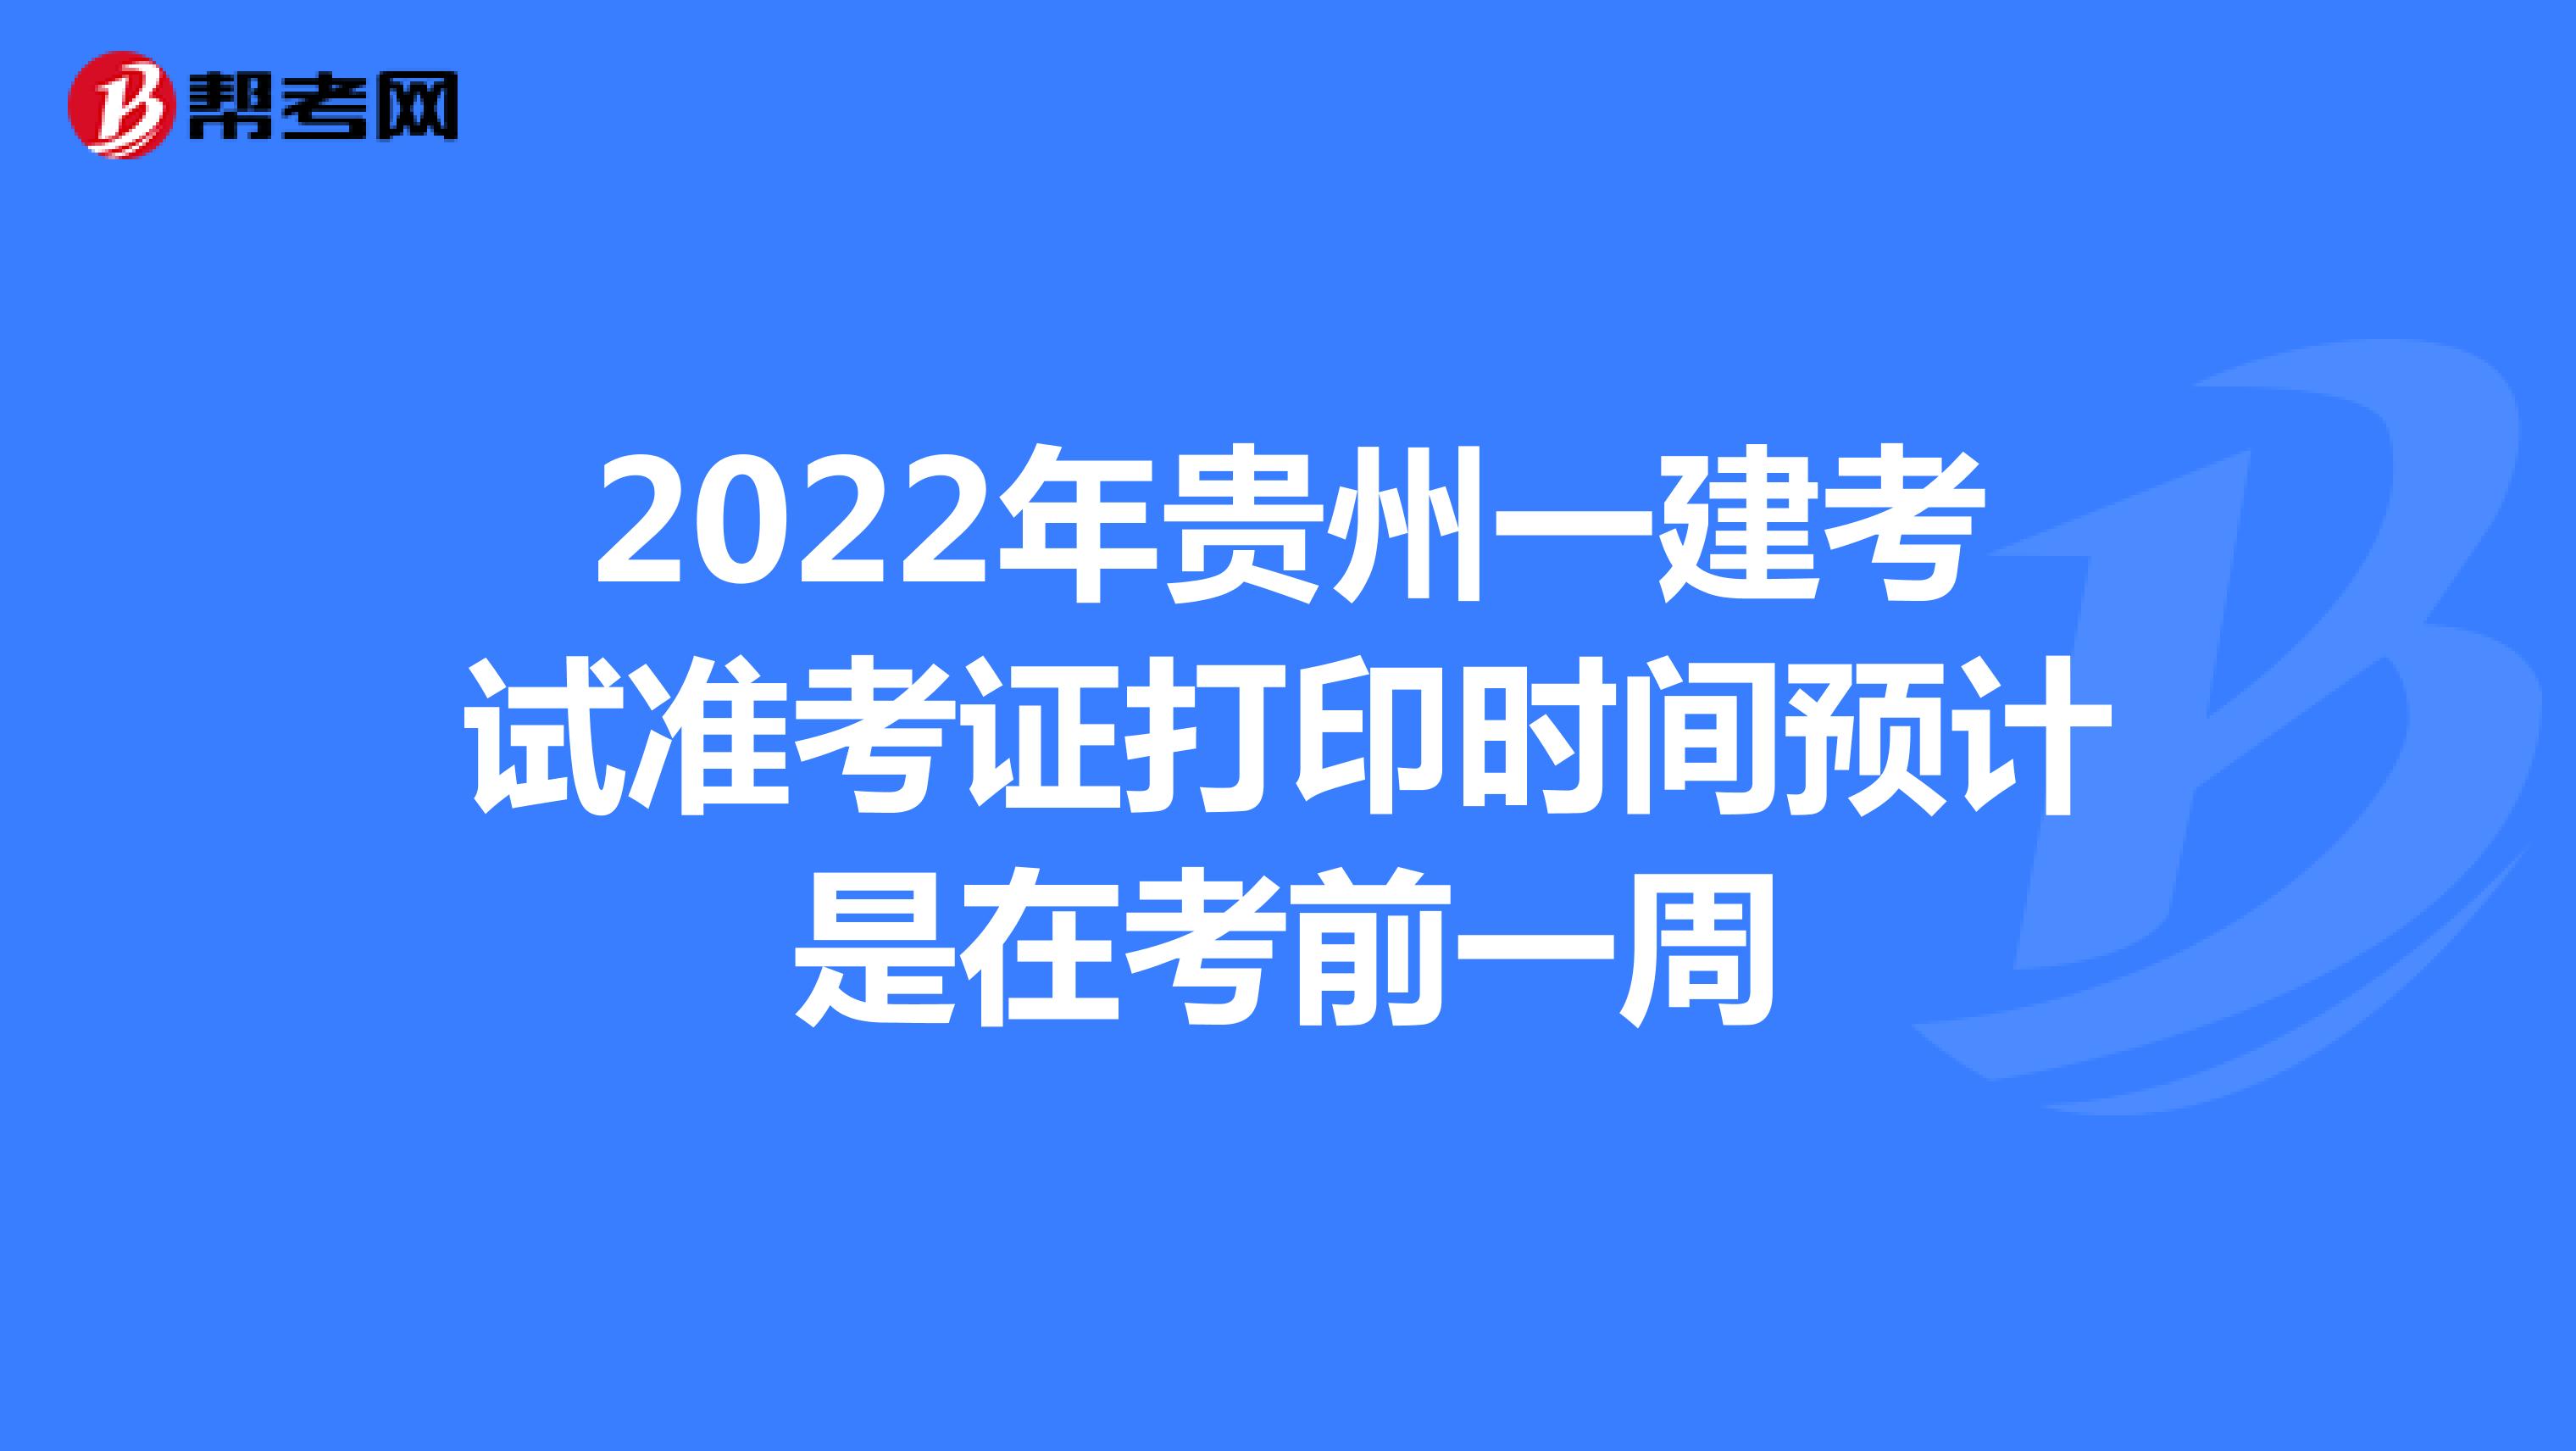 2022年贵州一建考试准考证打印时间预计是在考前一周